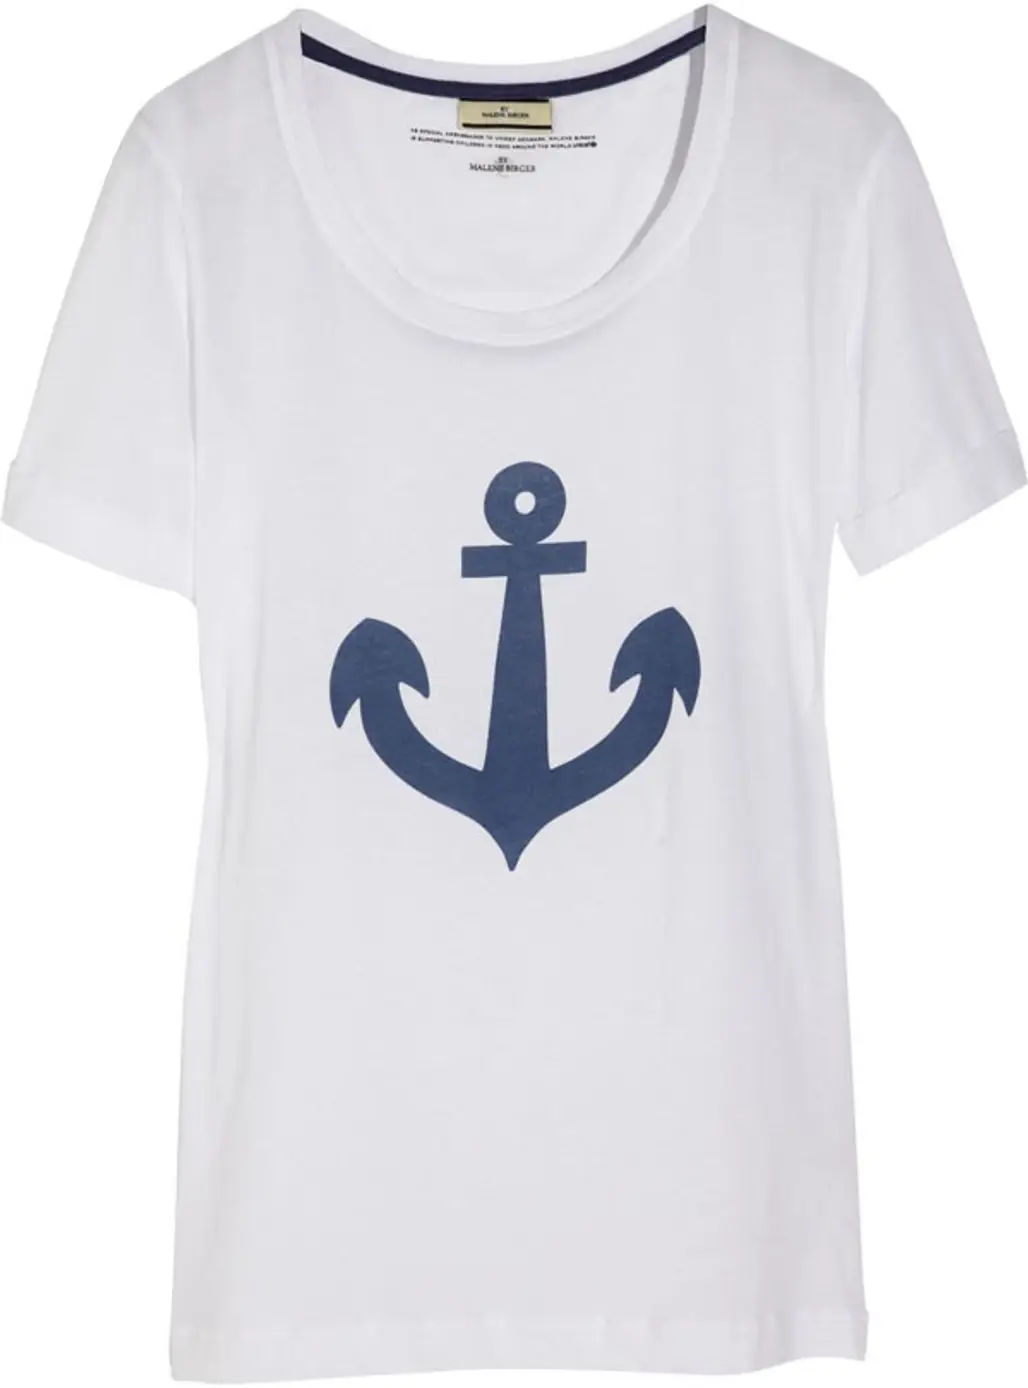 Anchor Printed T-shirt